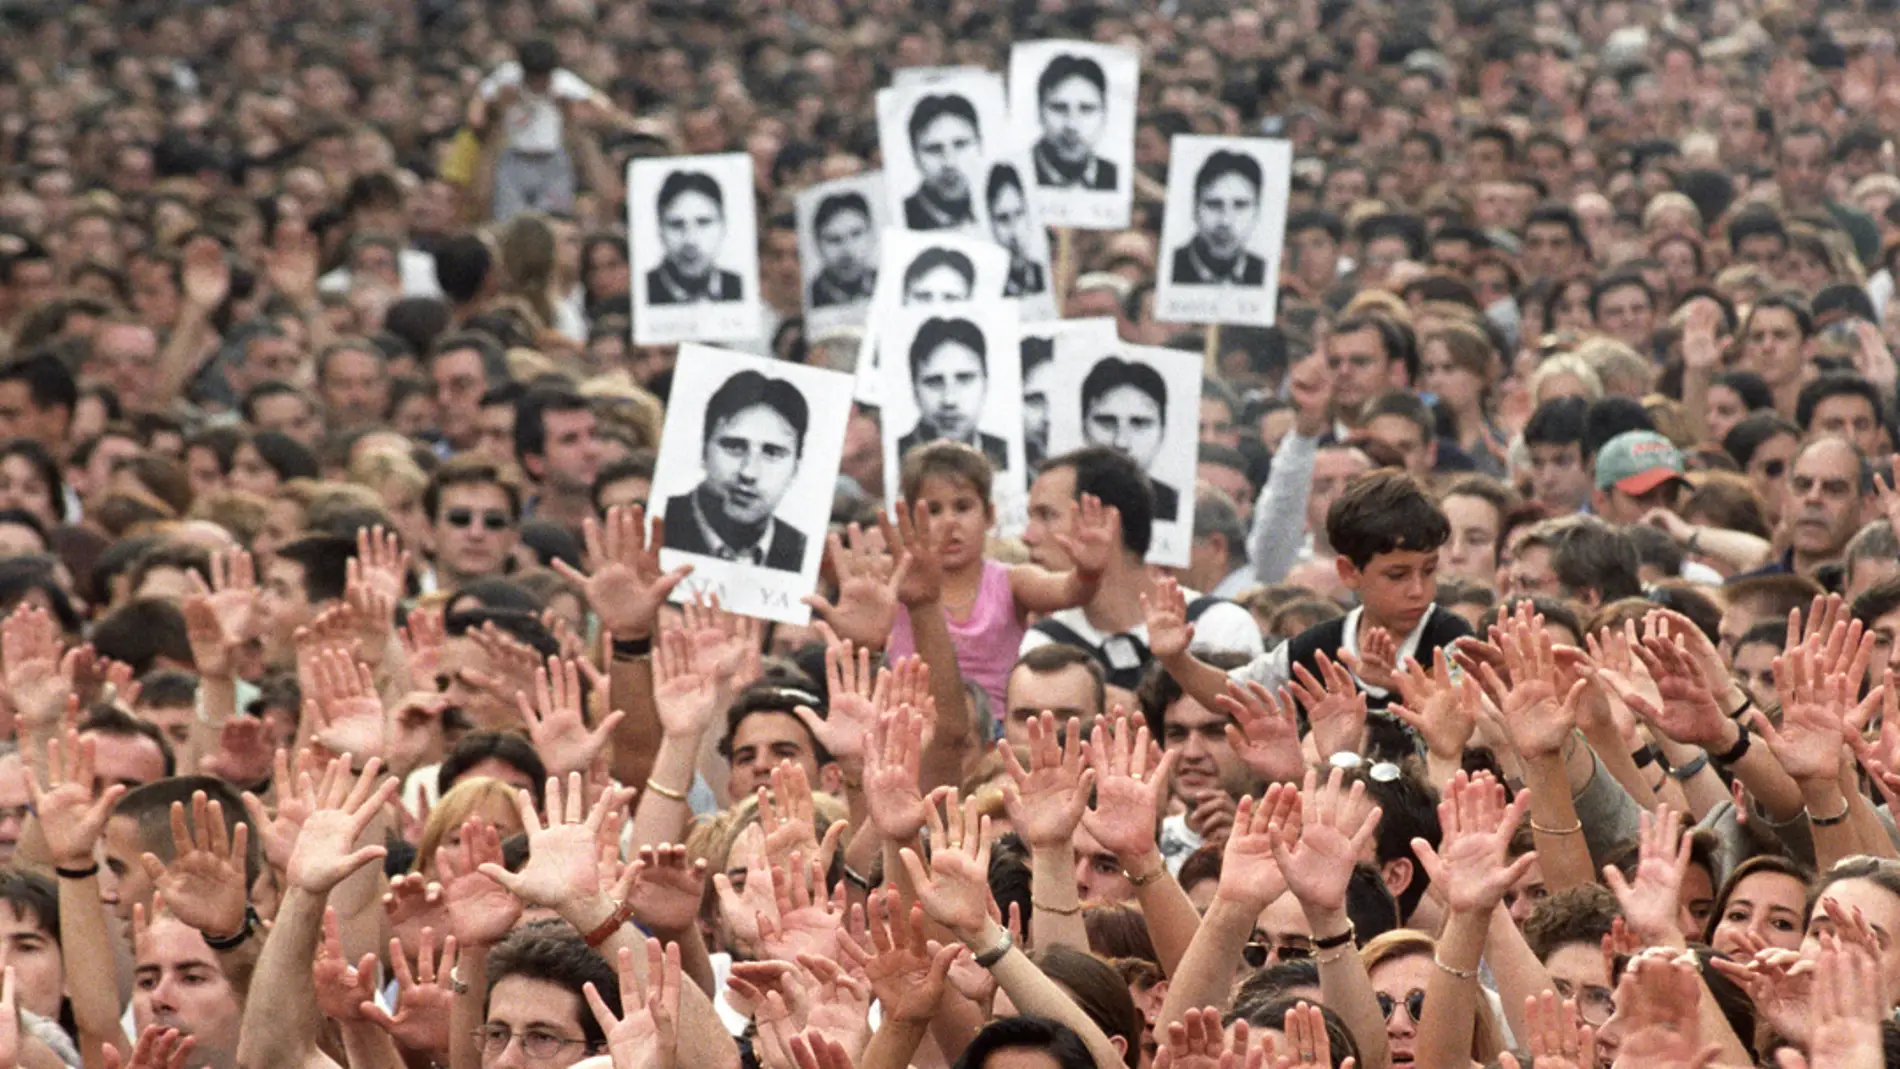  Más de medio millón de personas asistieron a la manifestación en protesta por el asesinato de Miguel Angel Blanco